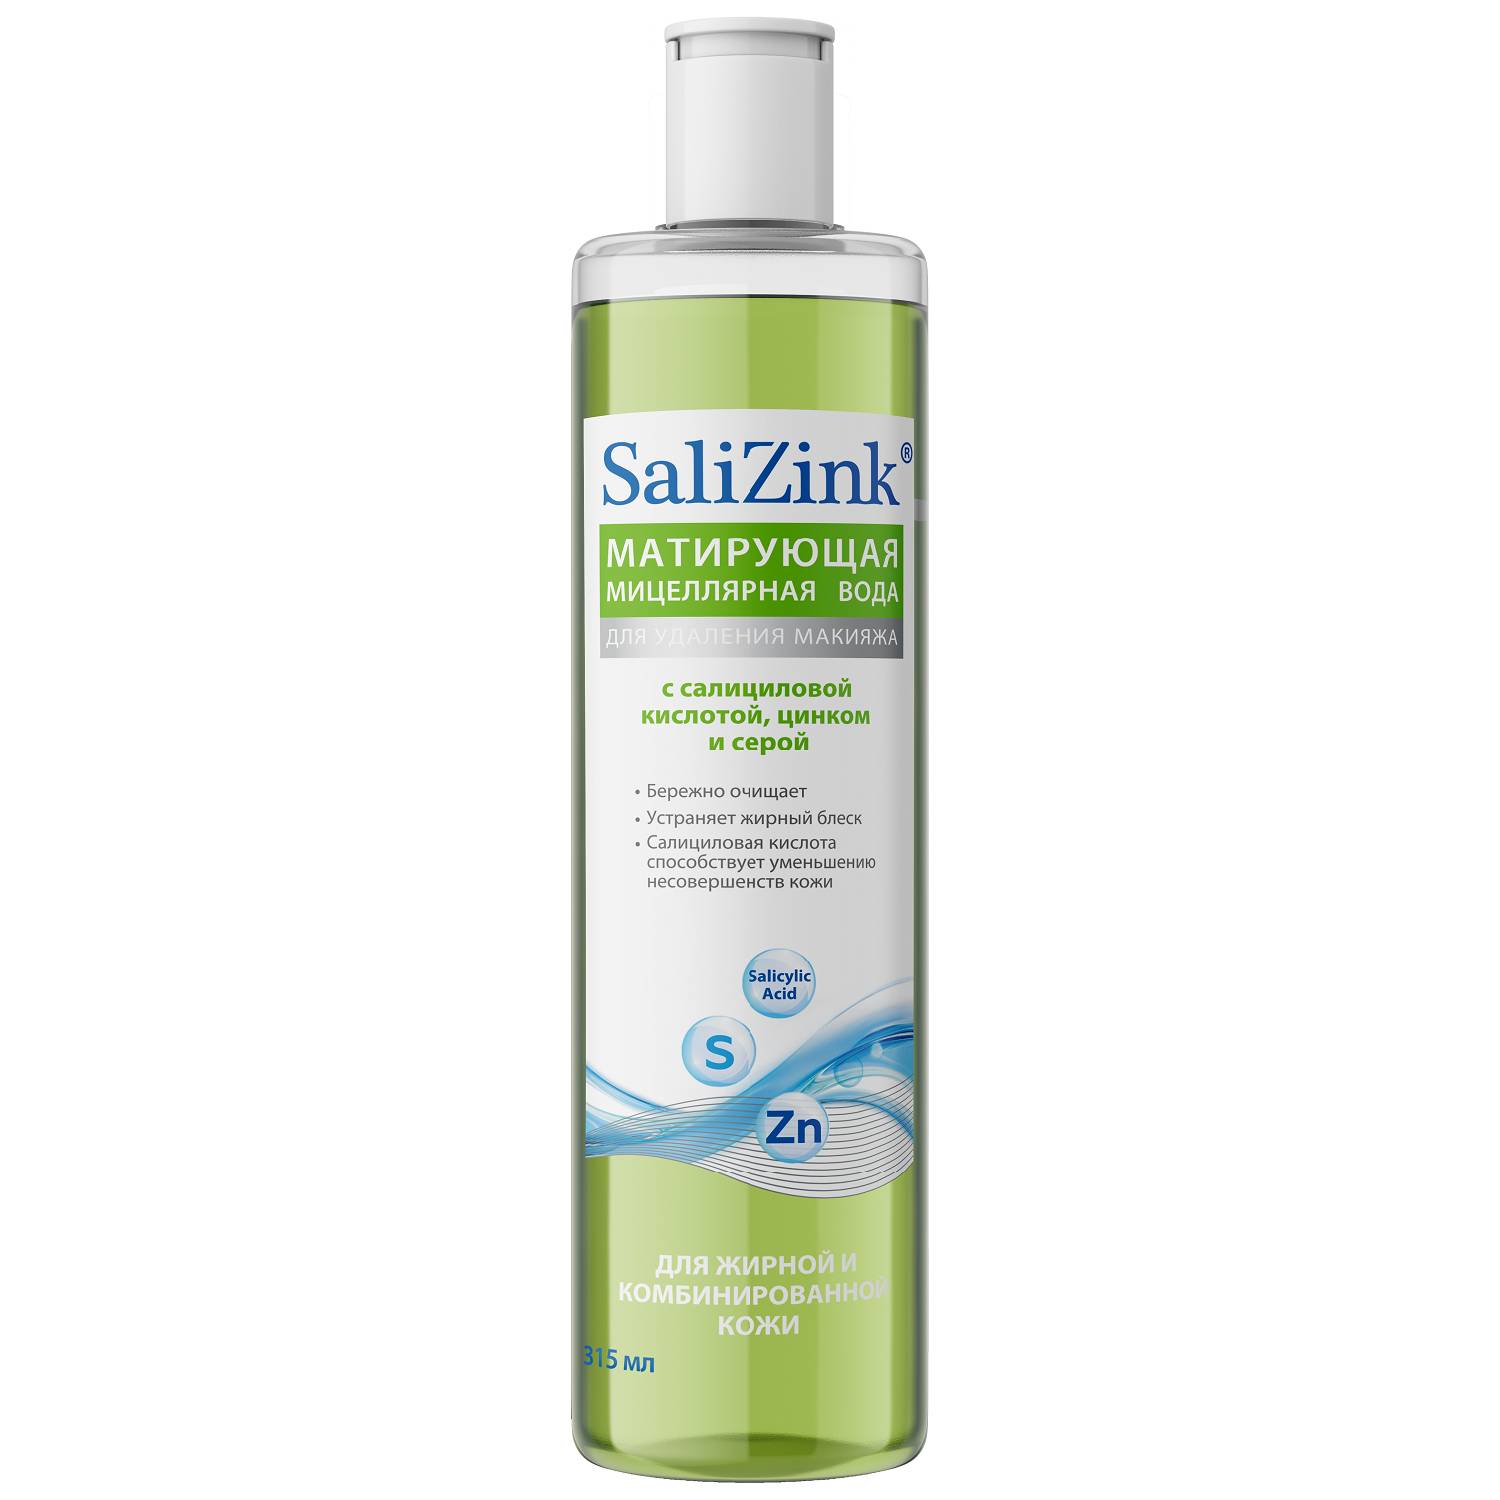 Salizink Матирующая мицеллярная вода для жирной и комбинированной кожи, 315 мл (Salizink, Жирная и комбинированная кожа)